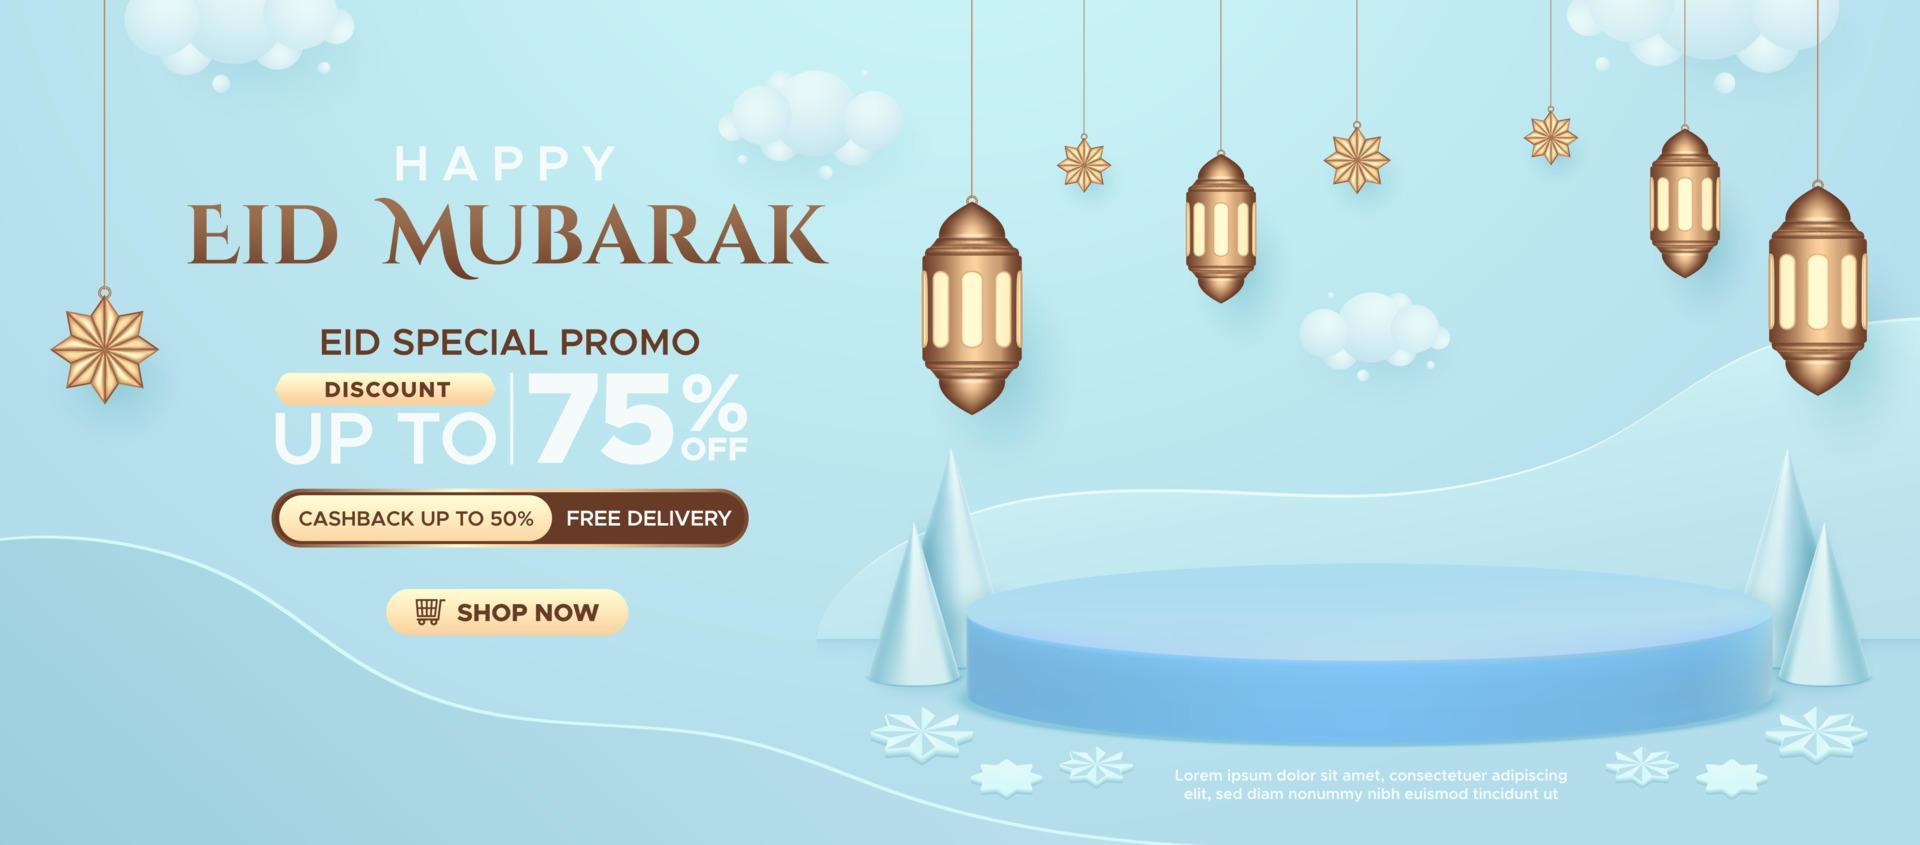 promoción de venta de eid mubarak con exhibición de productos y plantilla de banner de decoración de temporada vector